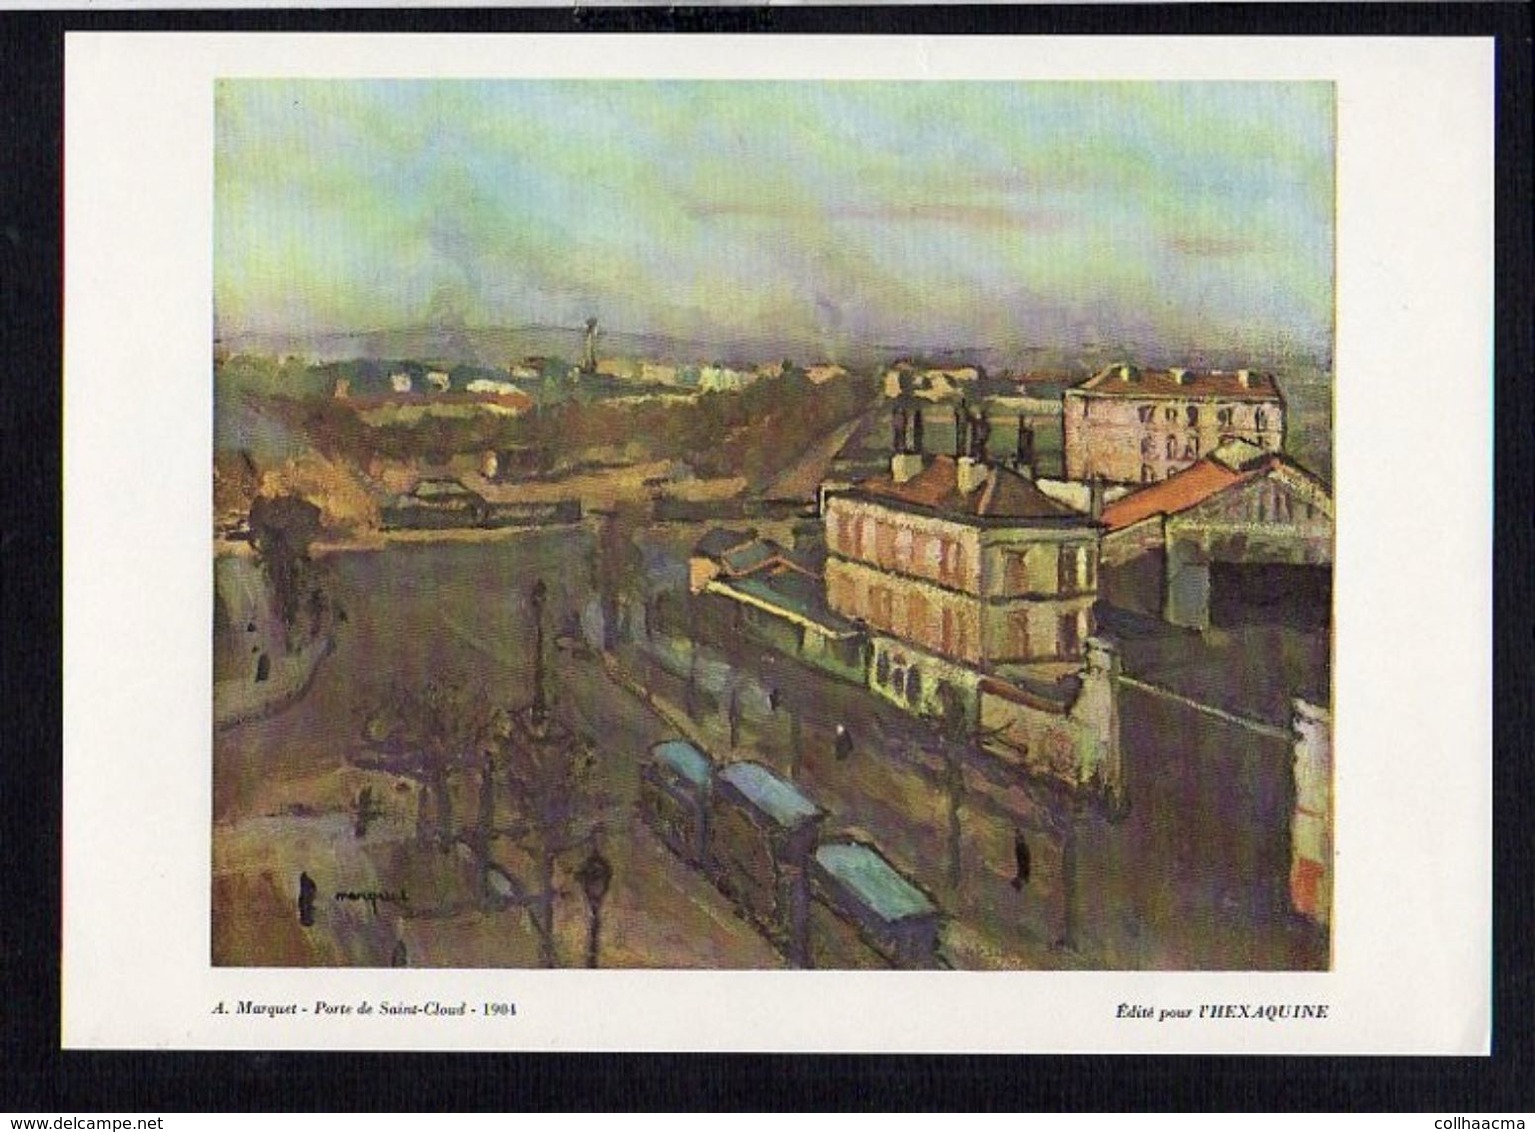 Art / Publicité Laboratoire Du Gomenol / " ( Paris) Porte De Saint Cloud 1904" De A. Marquet - Publicités